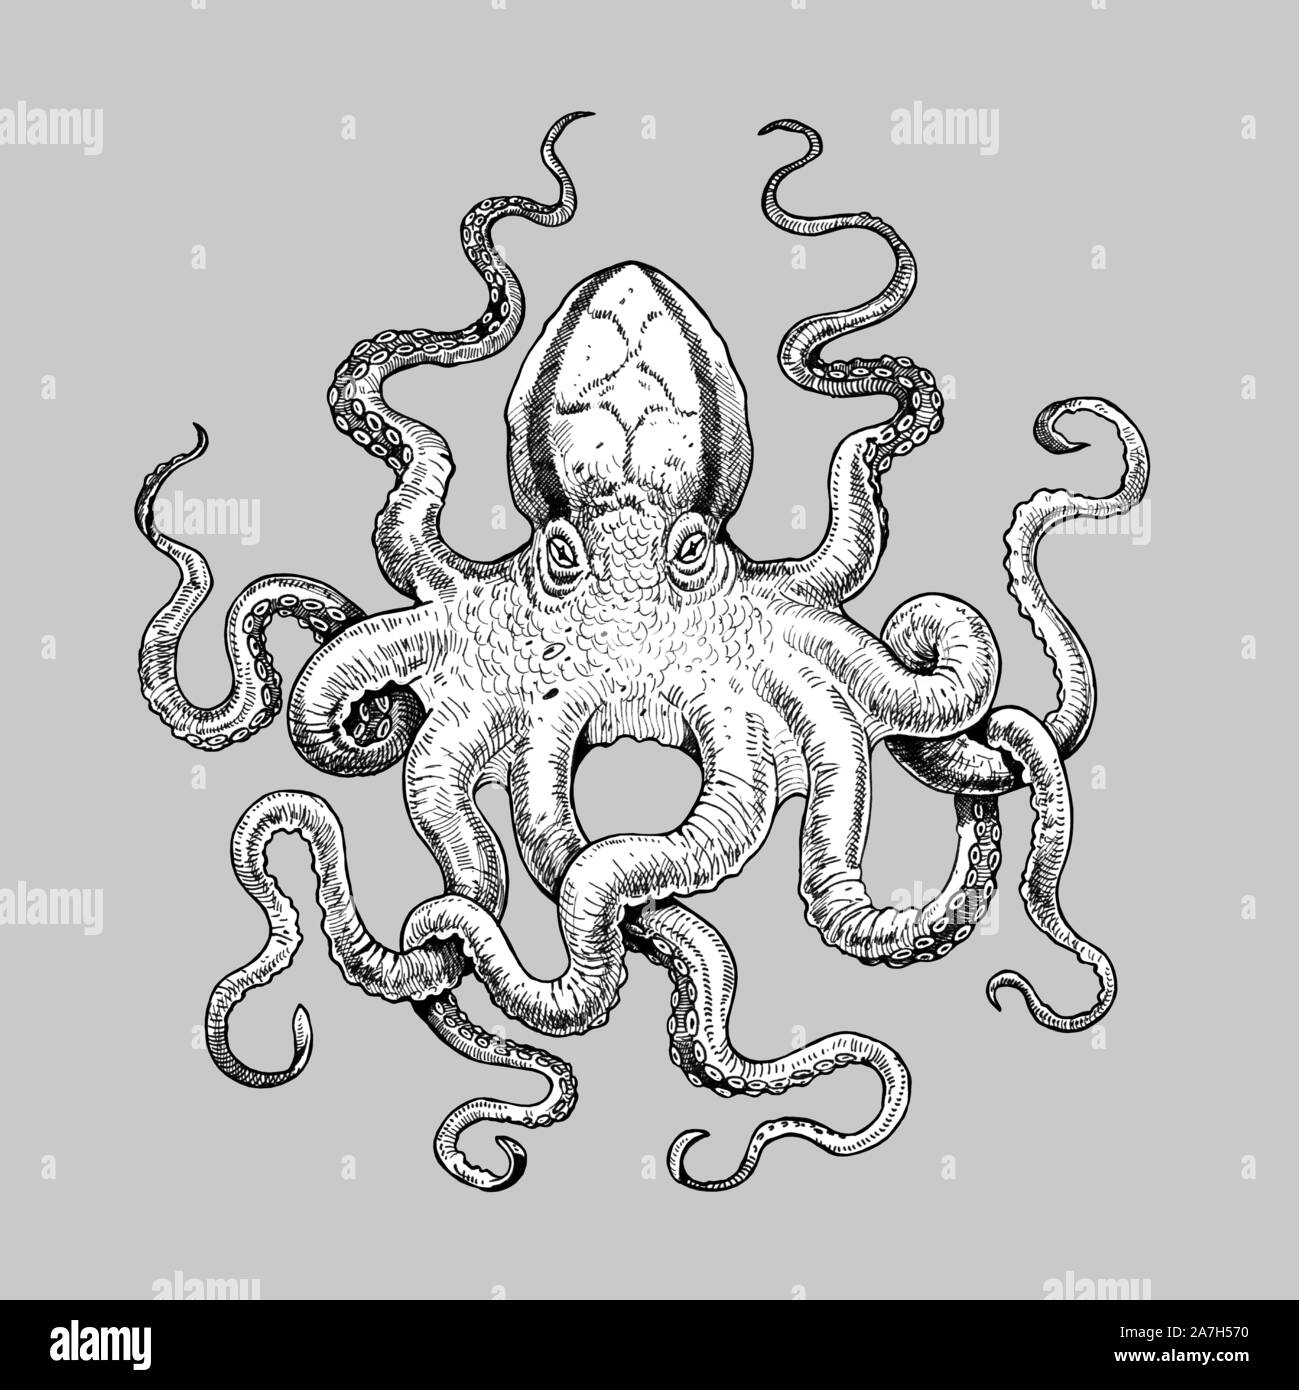 Poulpe mystique dessin. Illustration de mollusques gigantesque. Dessin fait à la main. Banque D'Images